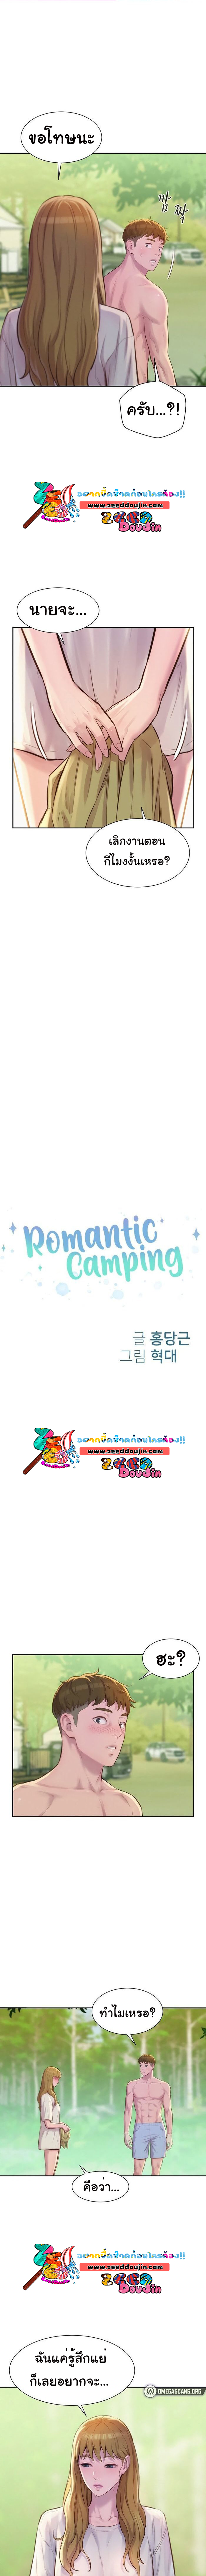 Camping 9 (1)